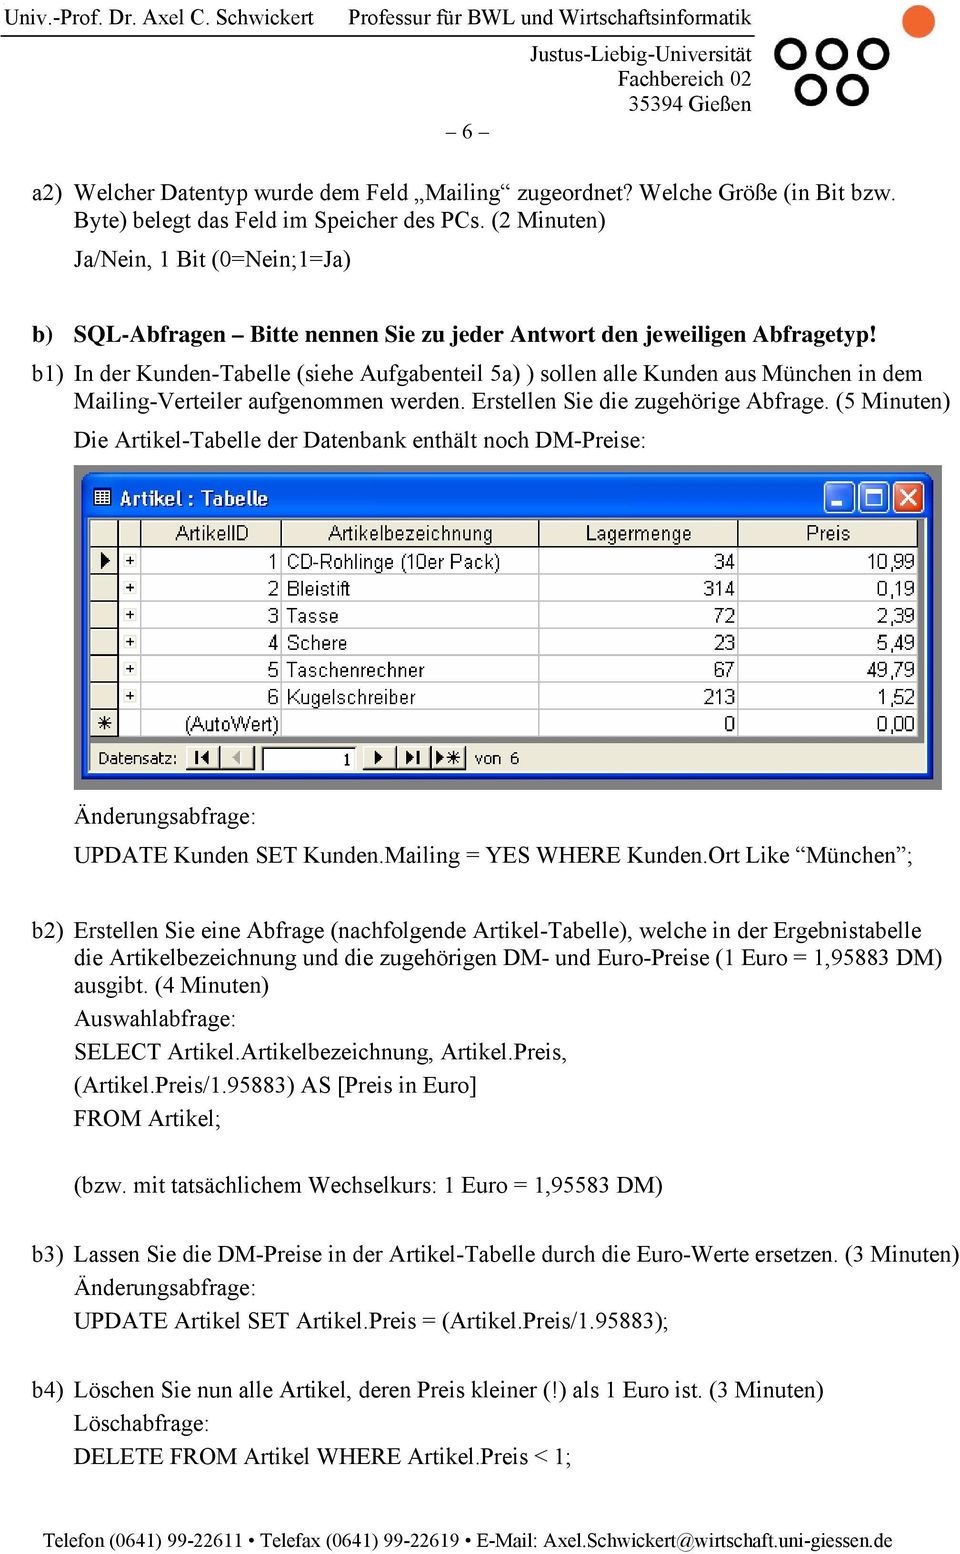 b1) In der Kunden-Tabelle (siehe Aufgabenteil 5a) ) sollen alle Kunden aus München in dem Mailing-Verteiler aufgenommen werden. Erstellen Sie die zugehörige Abfrage.